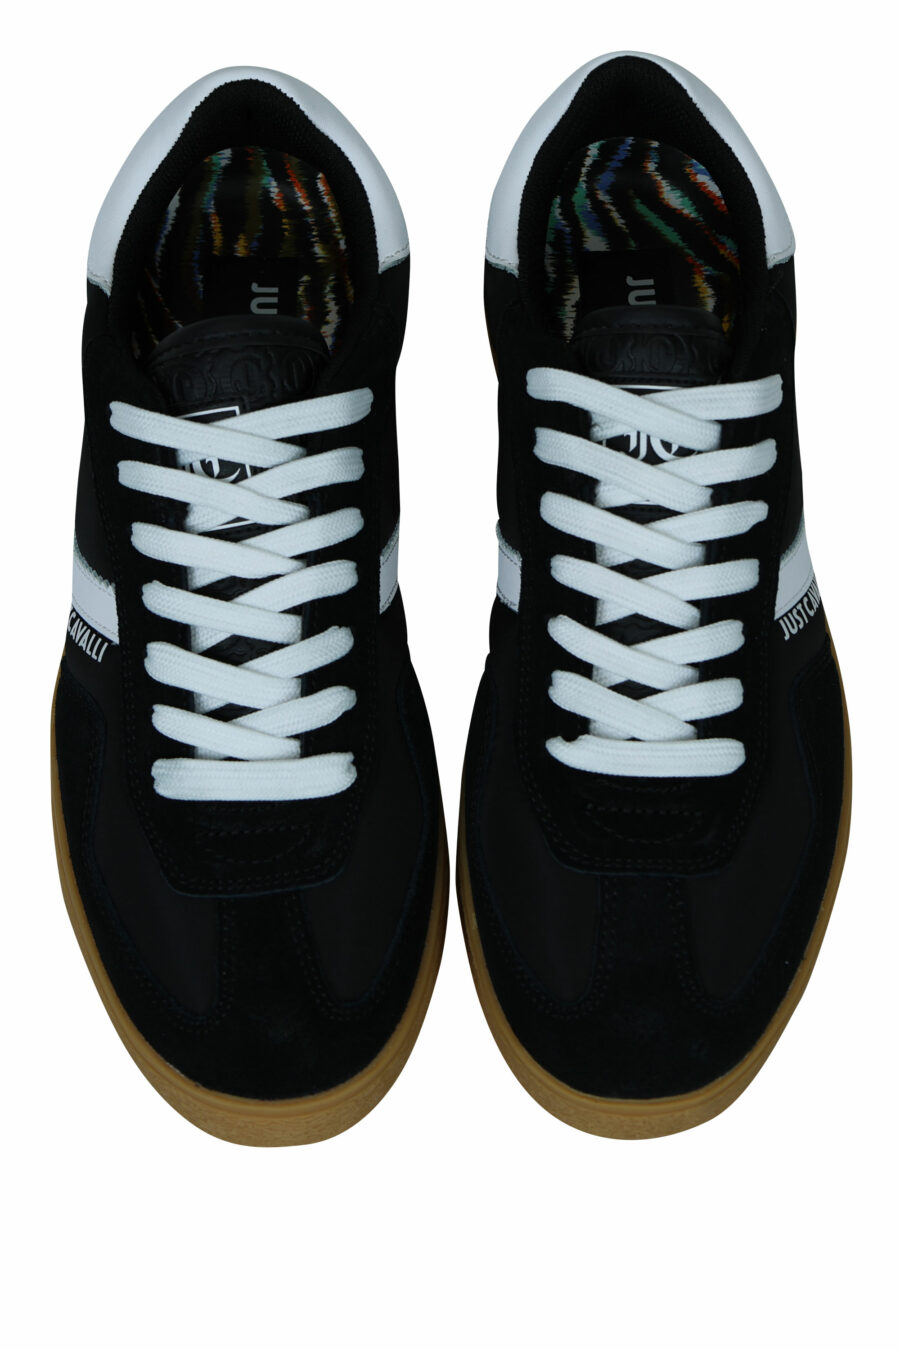 Zapatillas negras con suela marrón y logo - 8052672740229 5